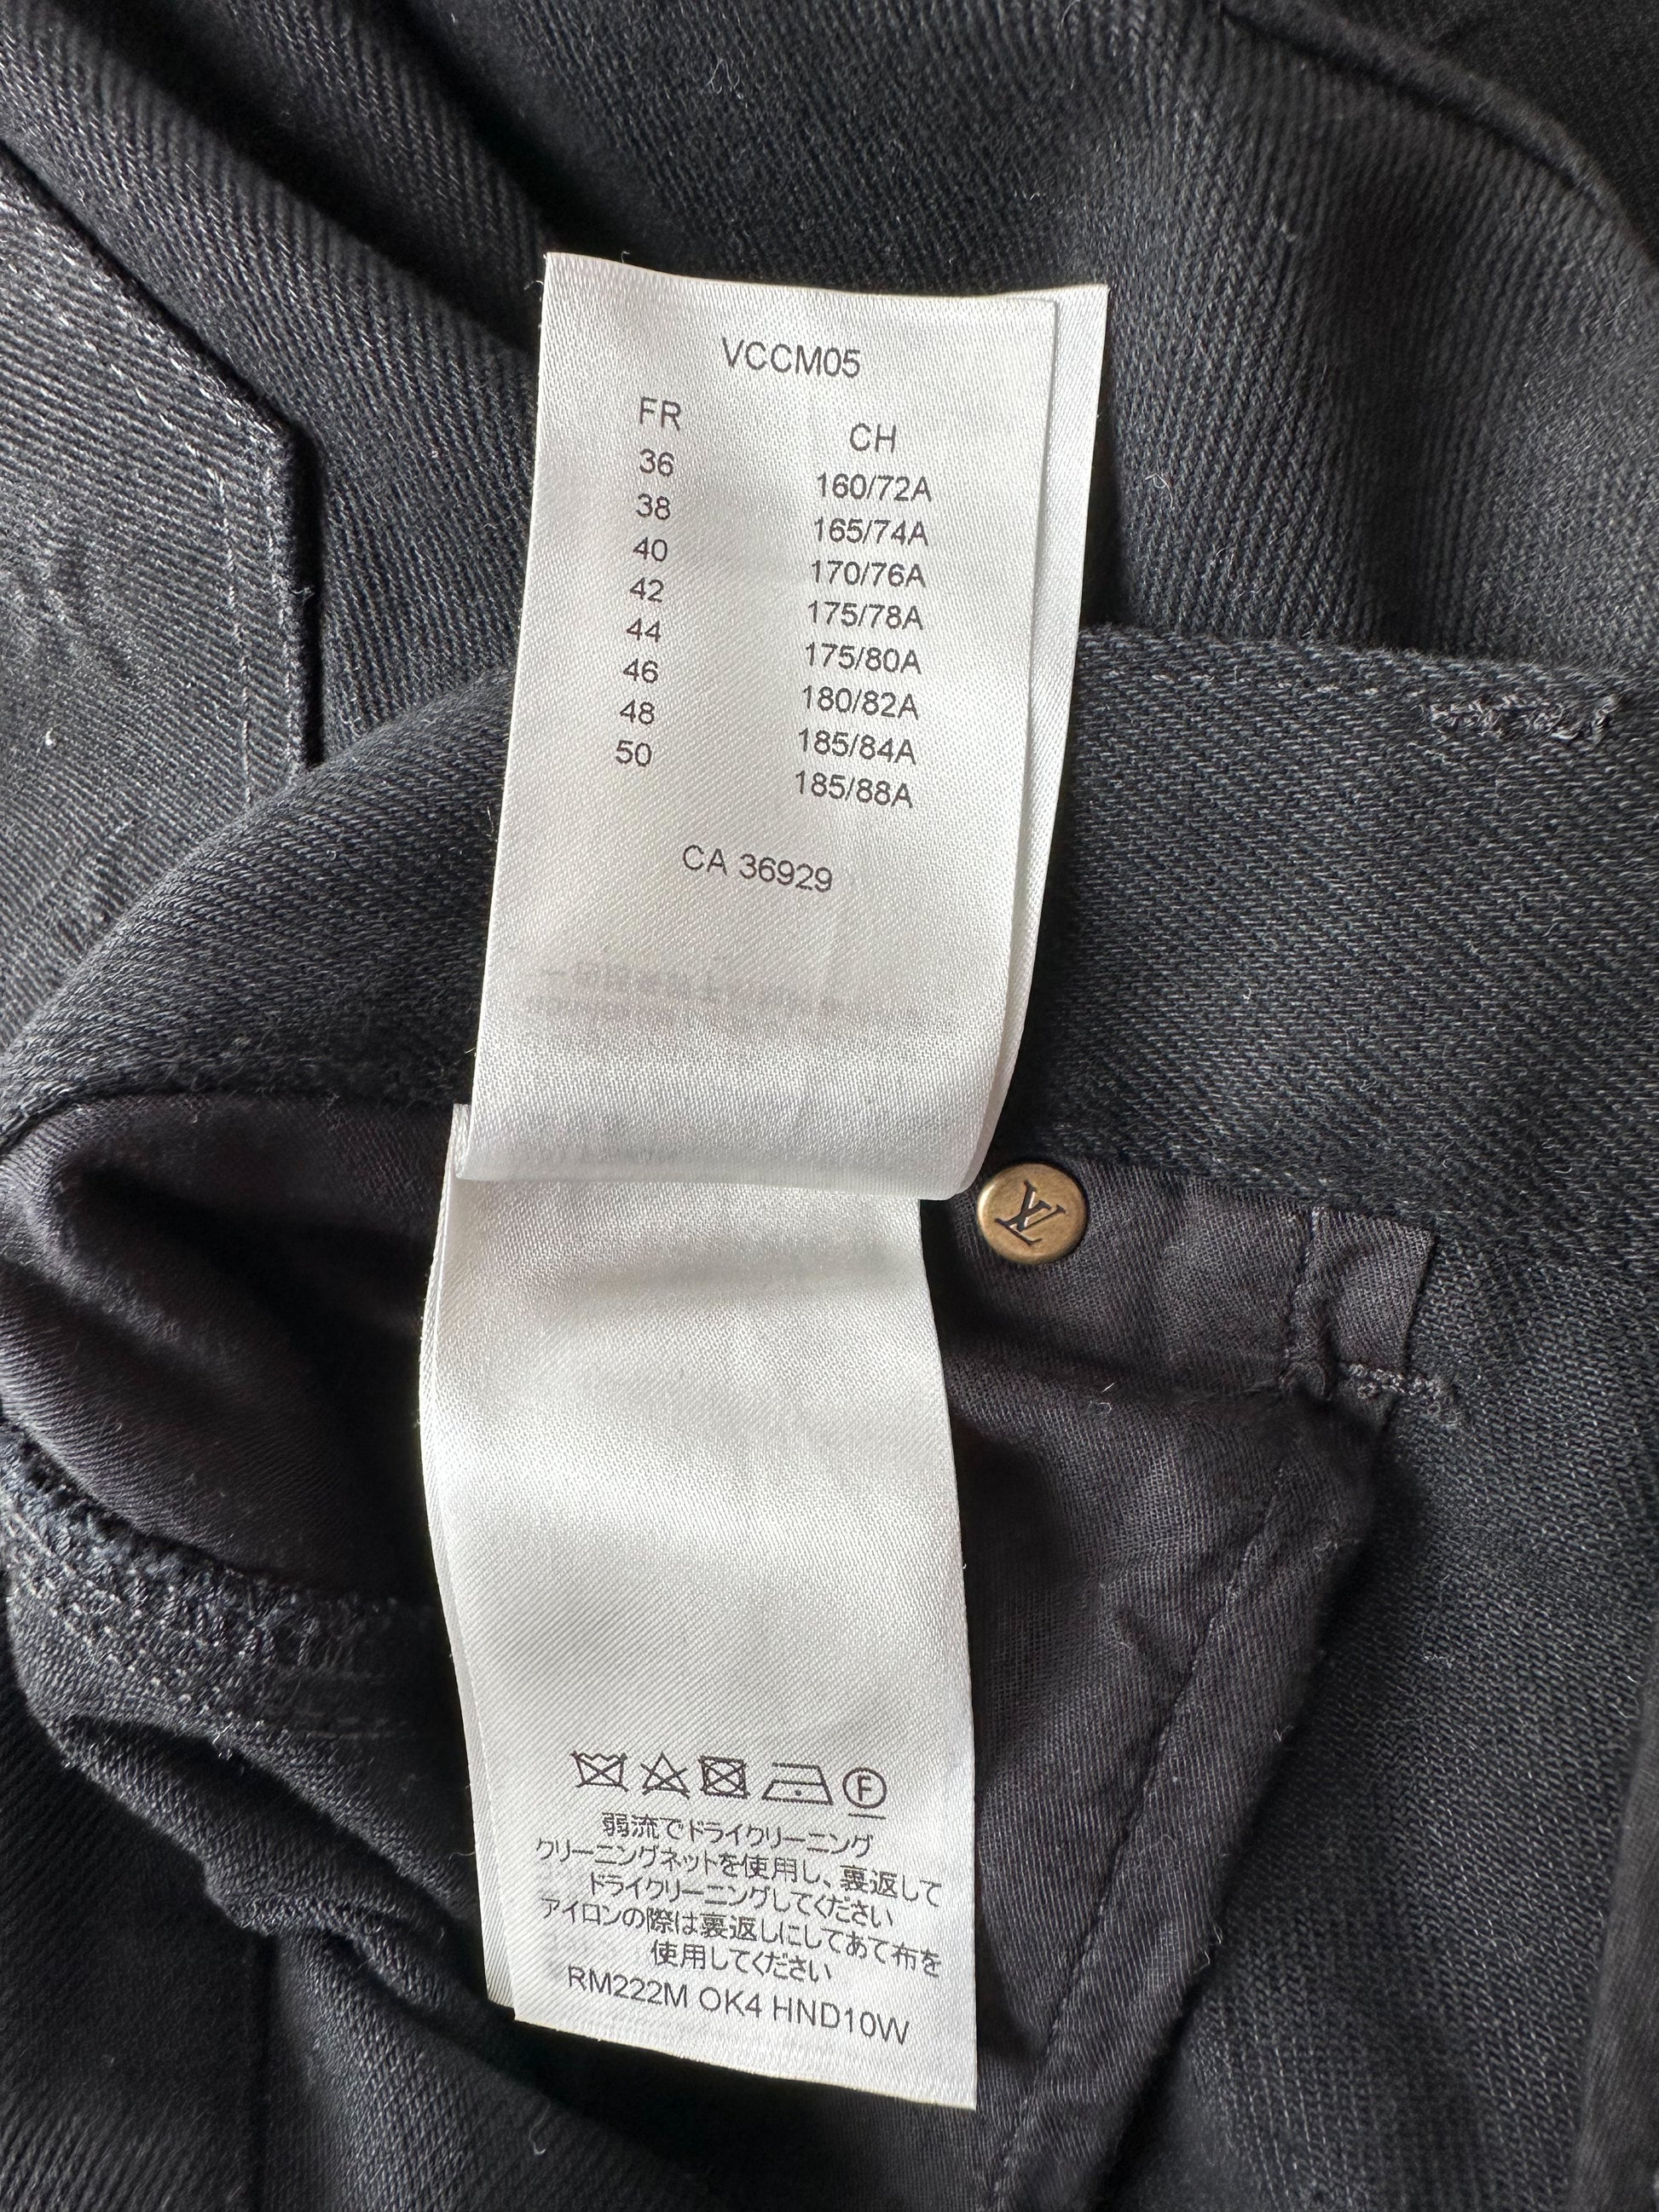 Louis Vuitton - Denim Carpenter Trousers - Black - Men - Size: 36 - Luxury